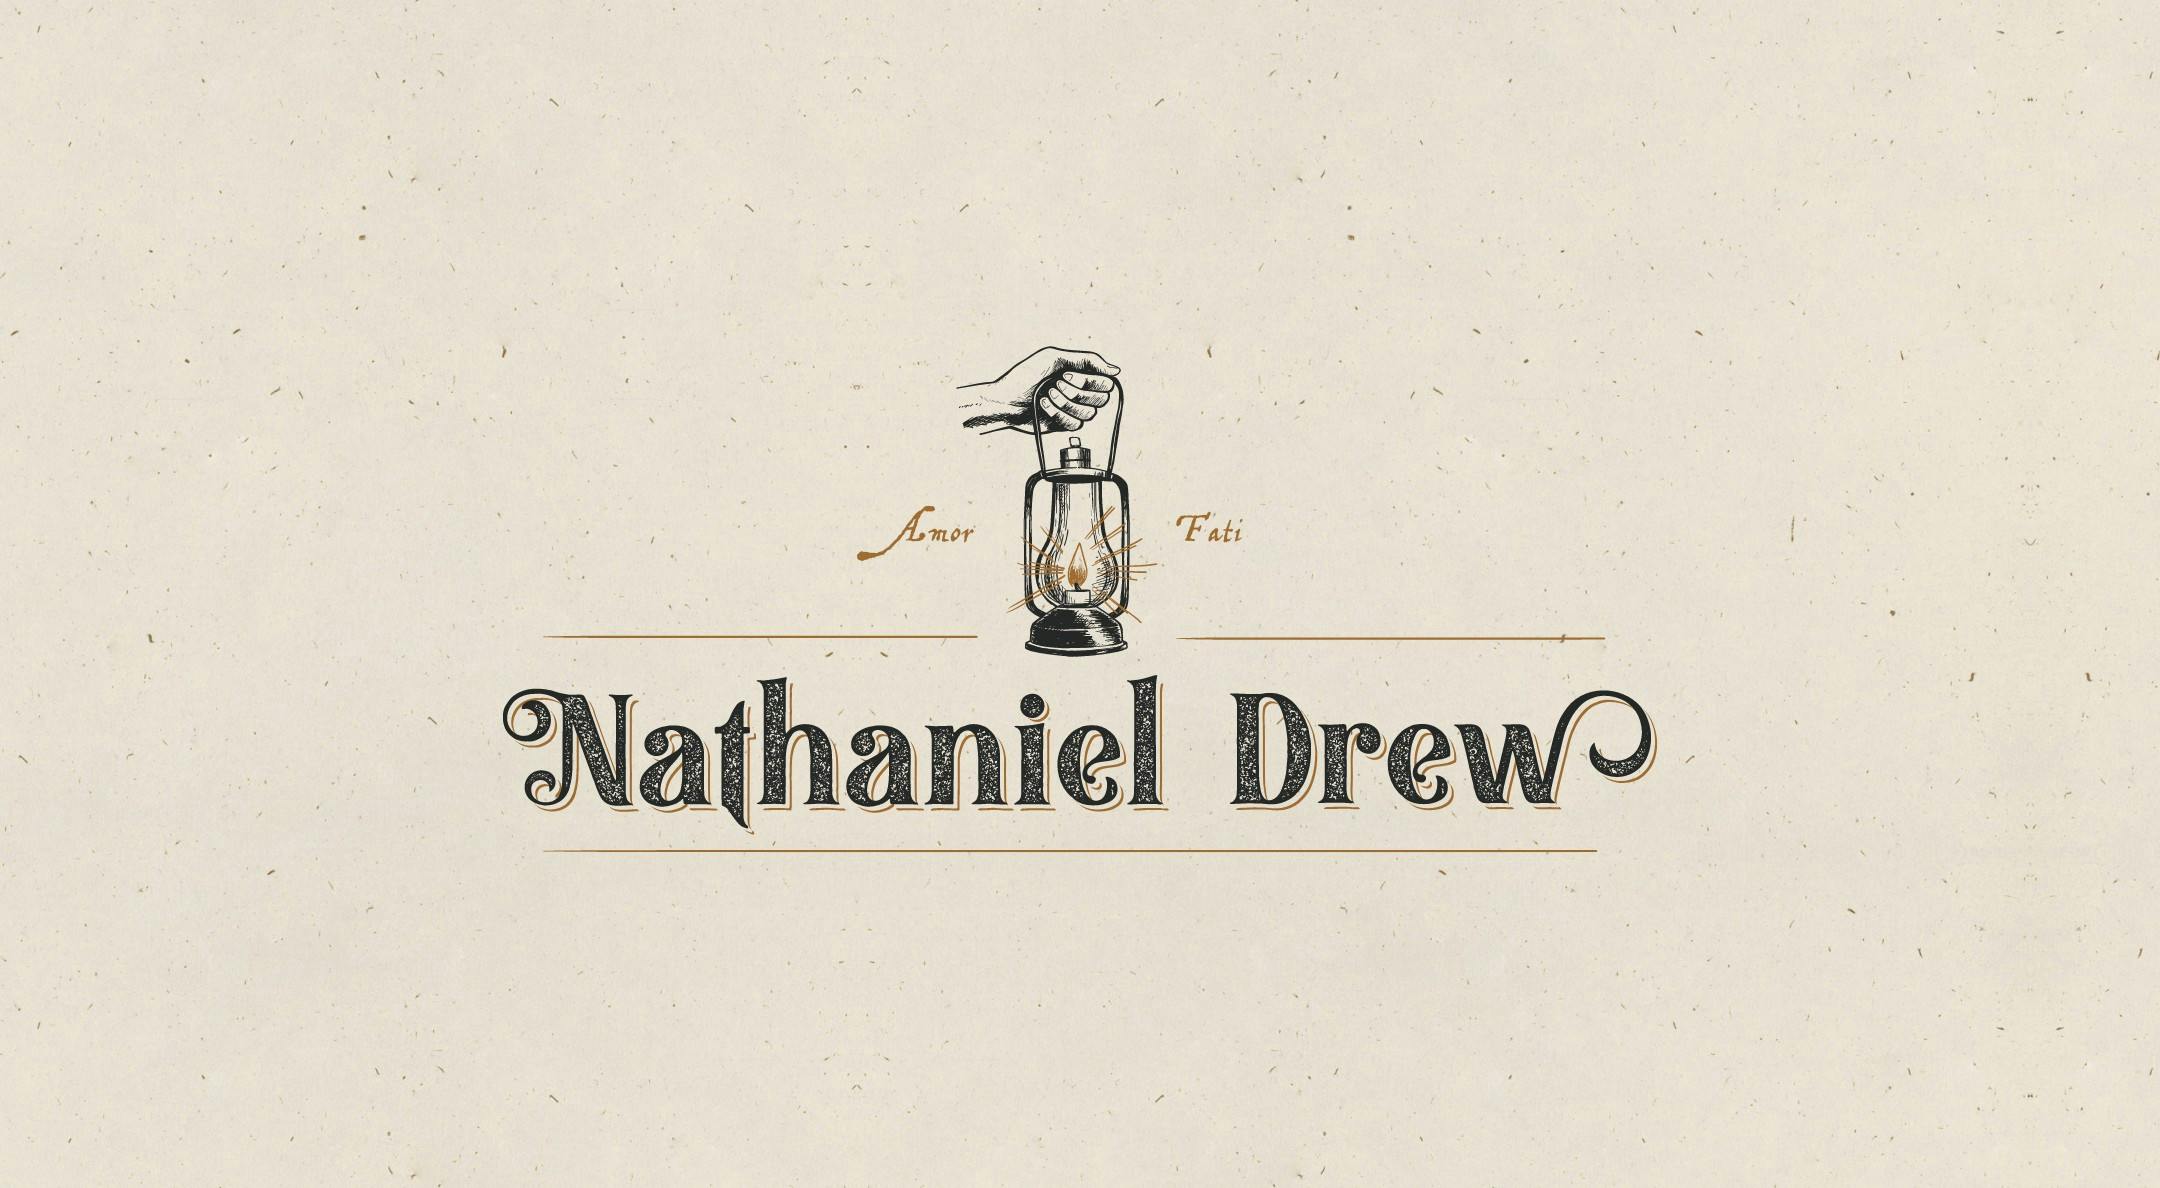 Nathaniel Drew logo